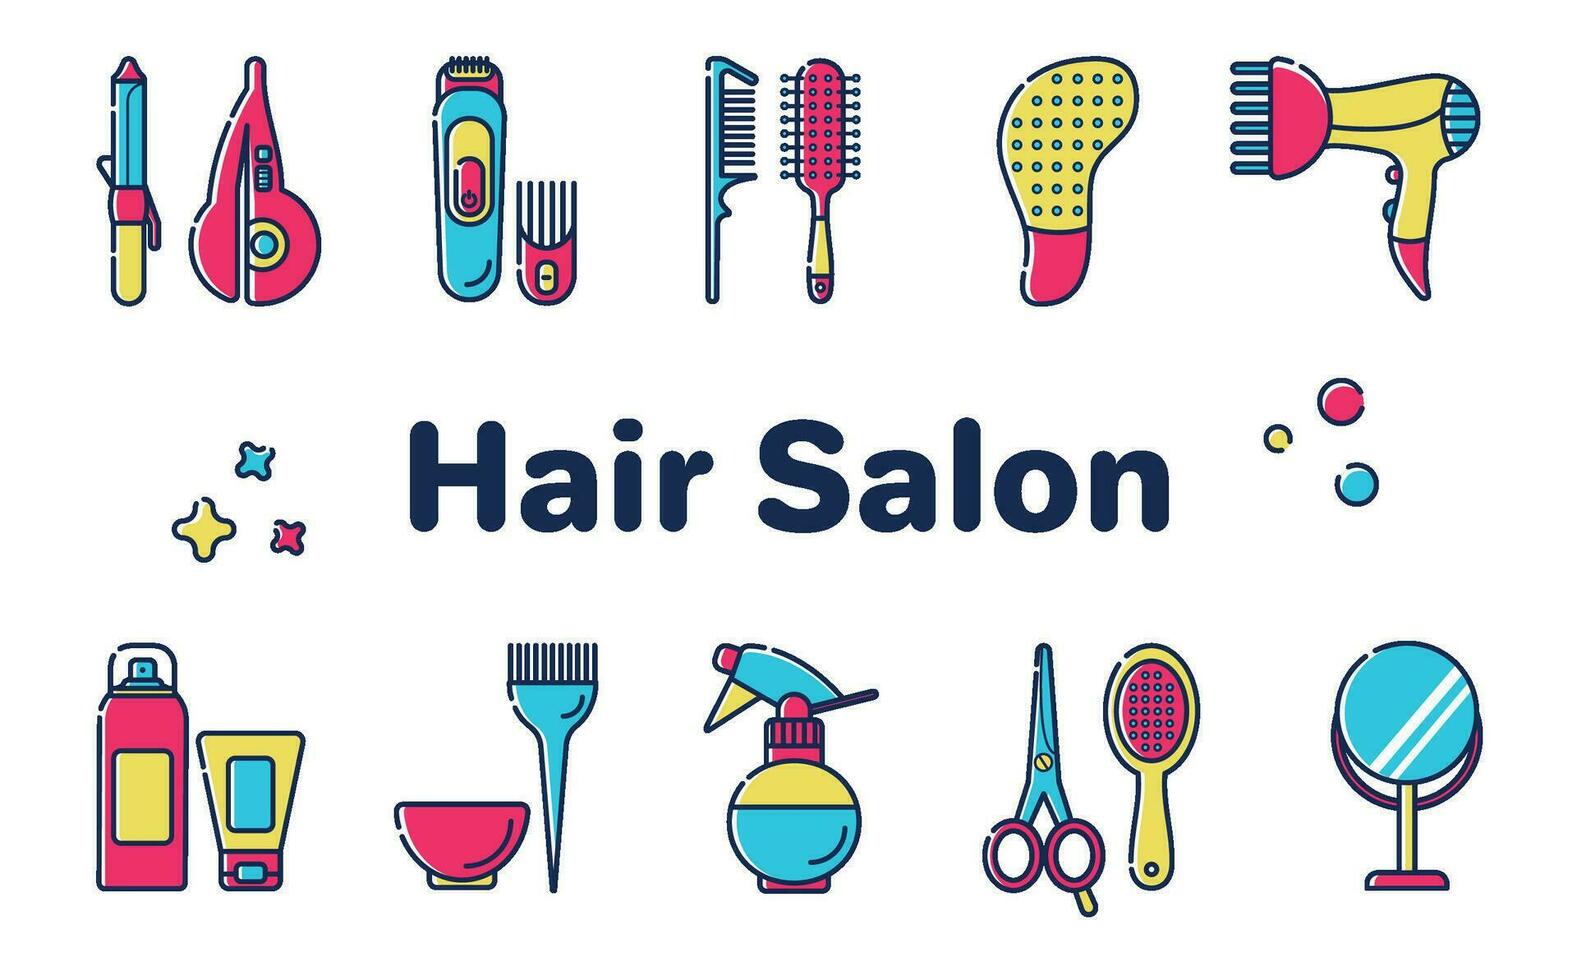 Hair salon icons vector